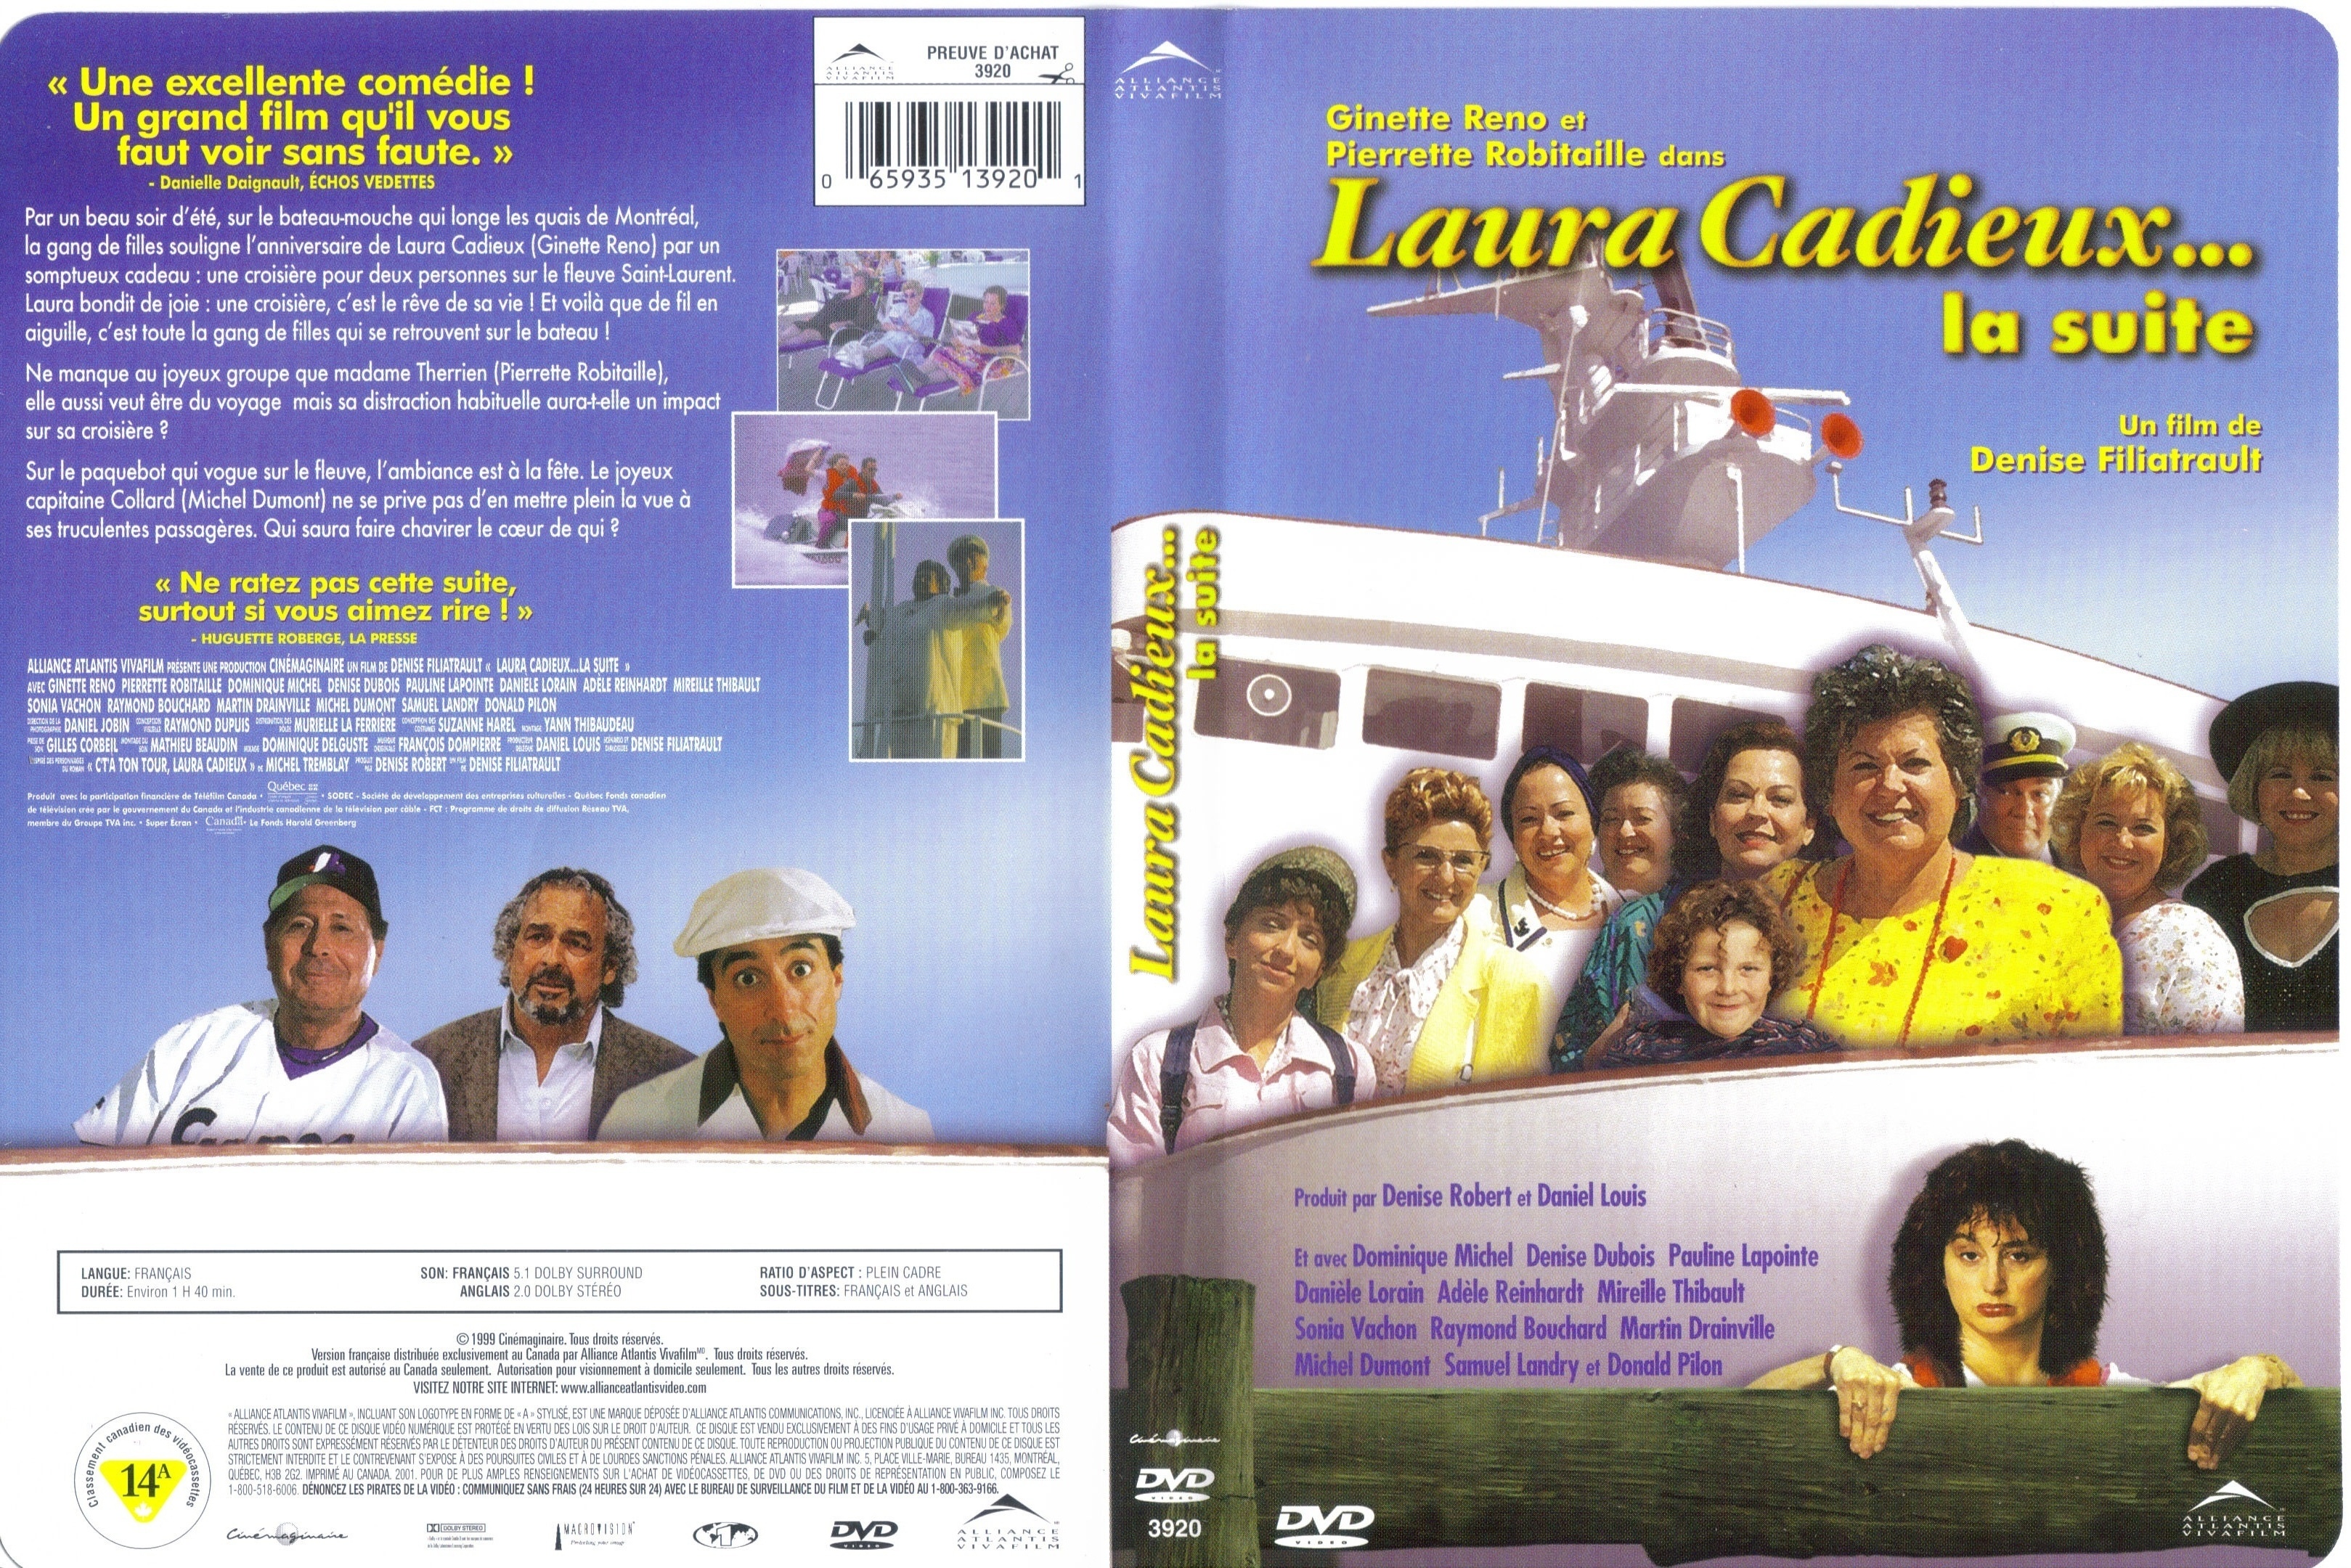 Jaquette DVD Laura Cadieux - La suite (Canadienne)